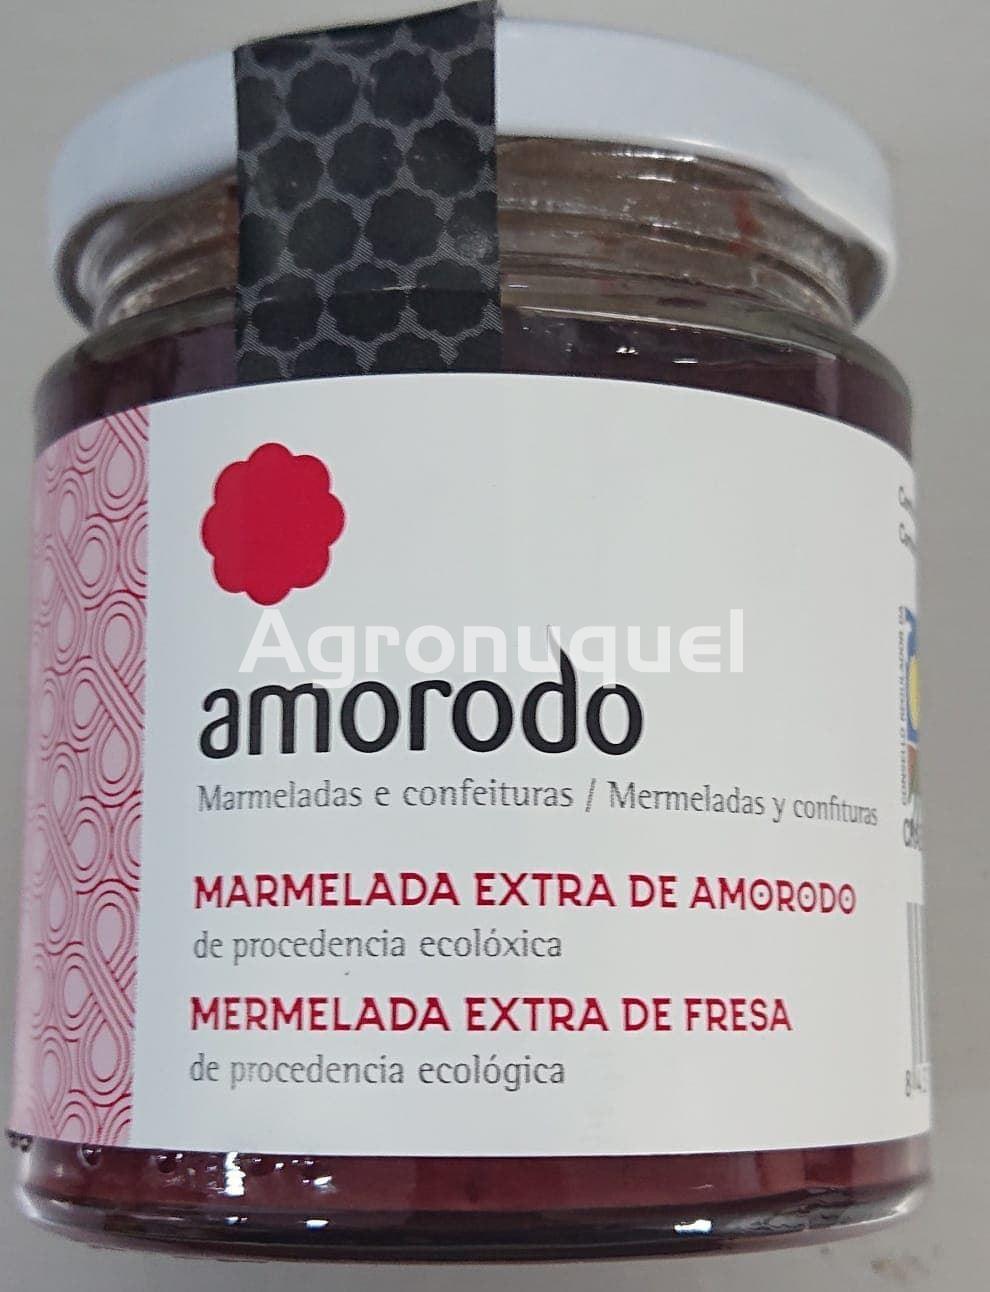 MARMELADA EXTRA DE AMORODO - Imagen 1